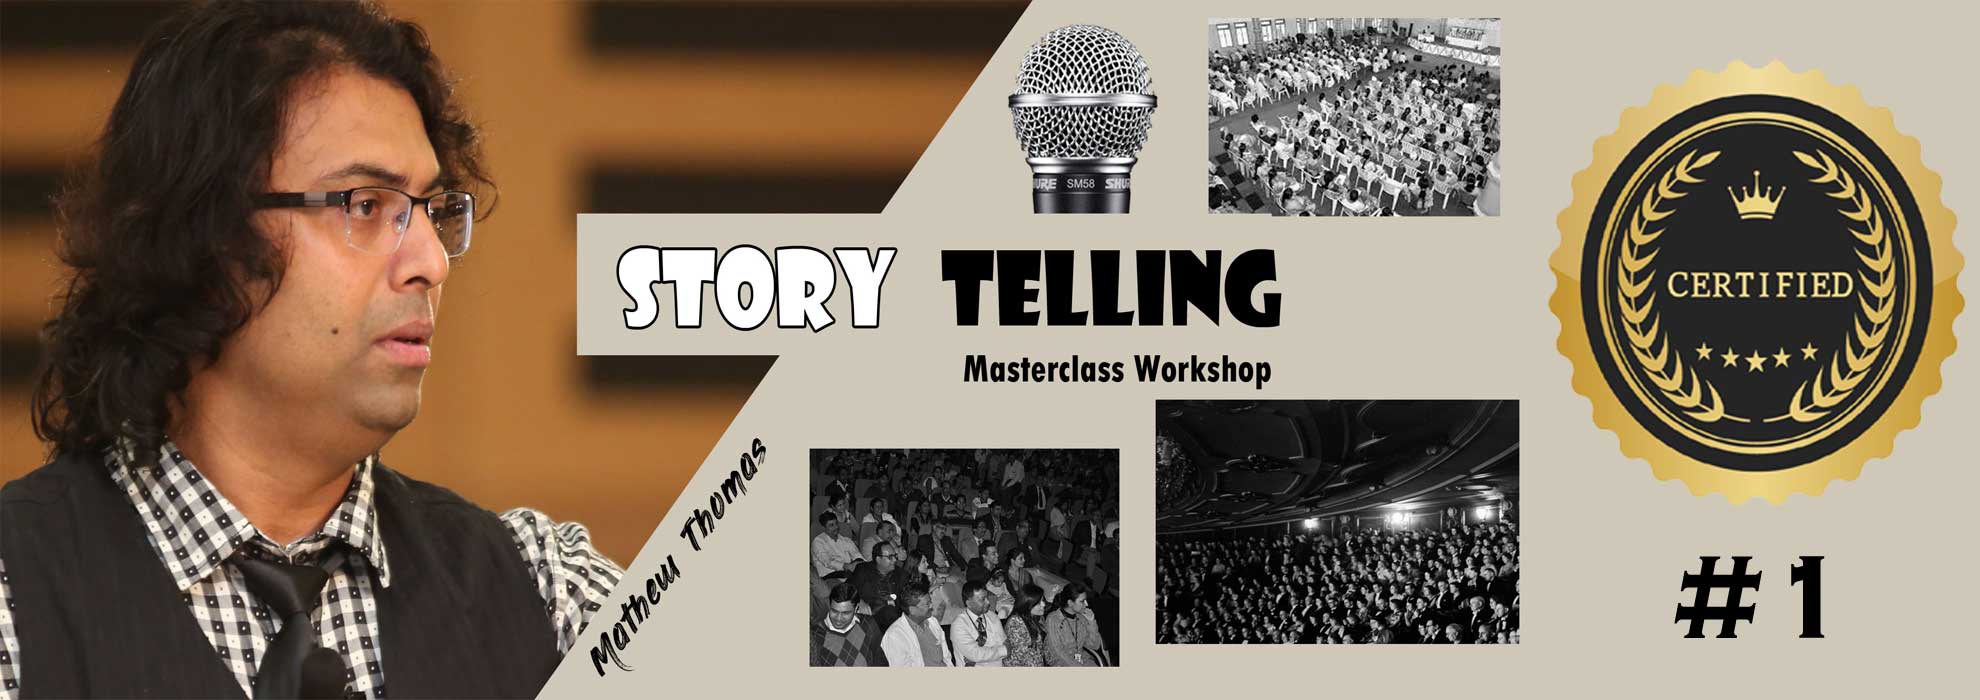 storytelling_Workshop